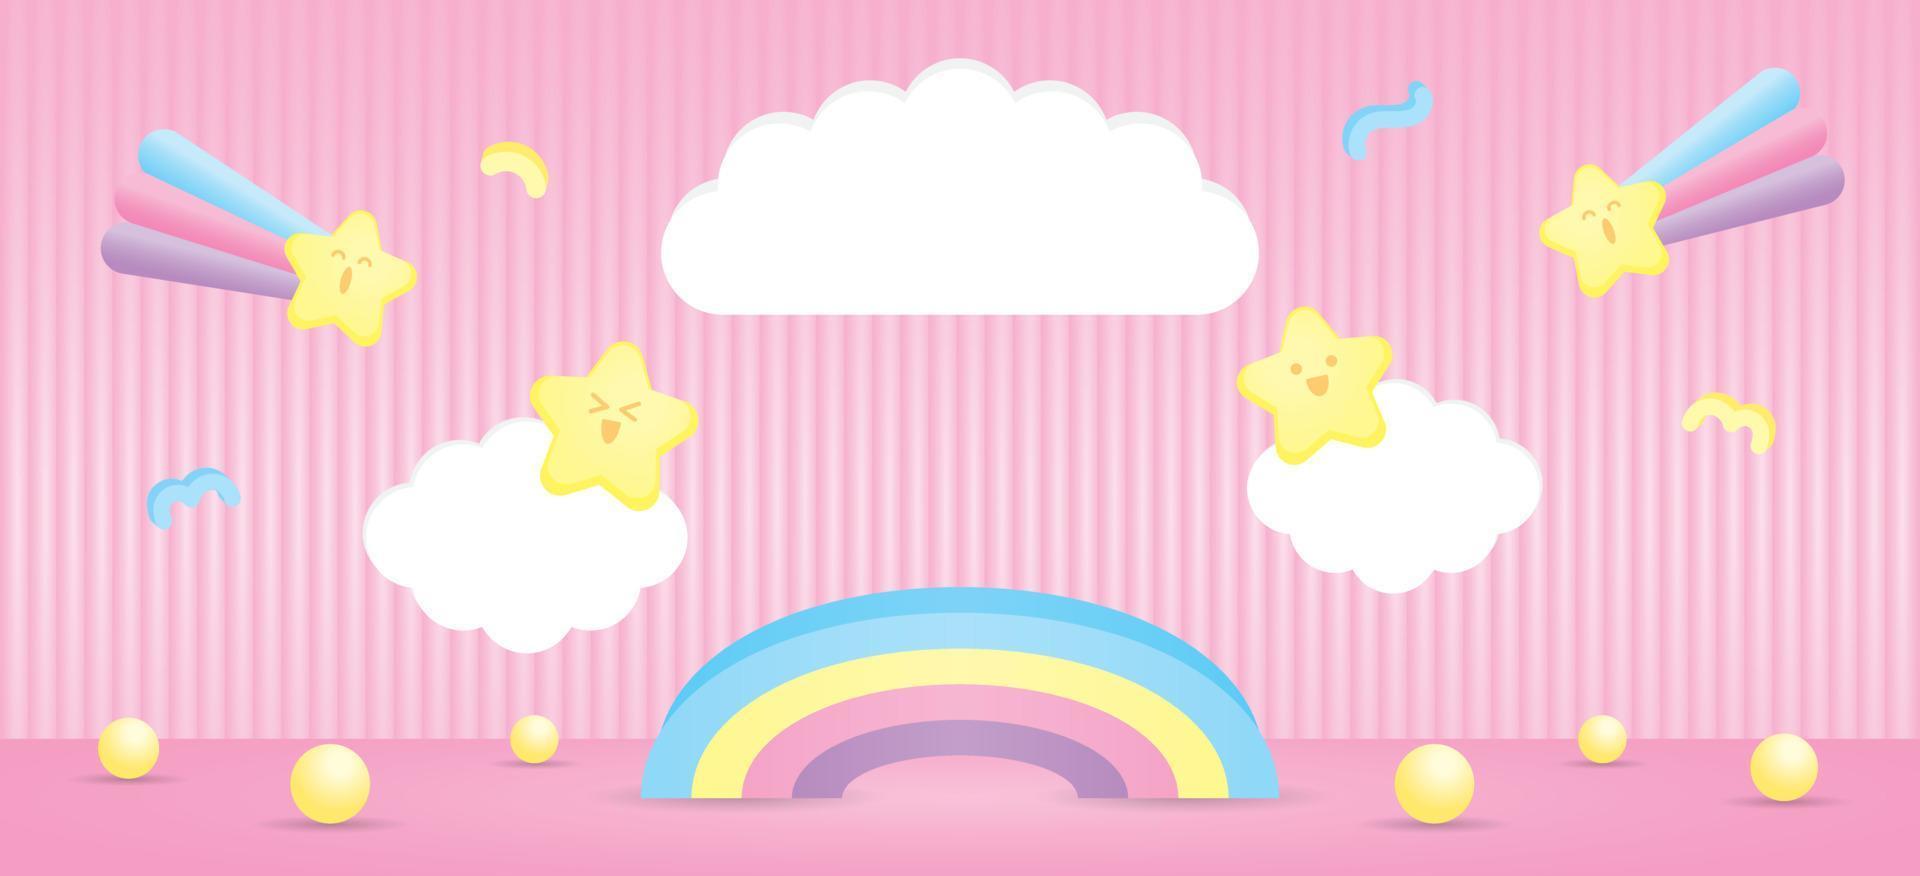 regnbåge visa stå med moln tecken och söt söt element på pastell rosa golv och vägg 3d illustration vektor för sätta objekt